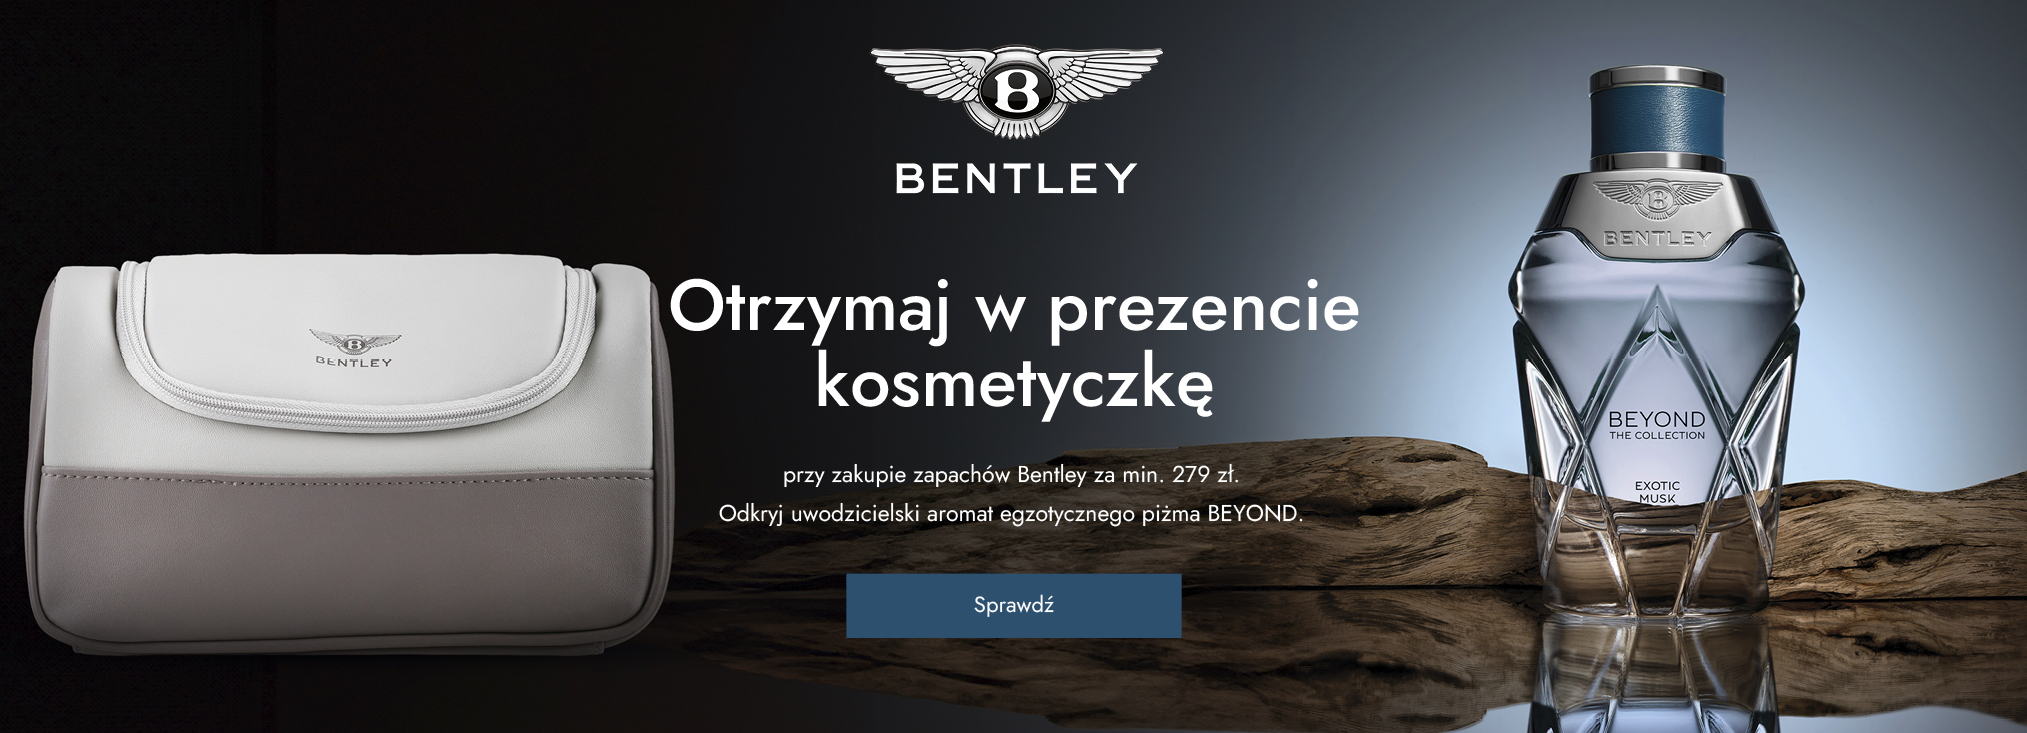 Bentley_perfumes